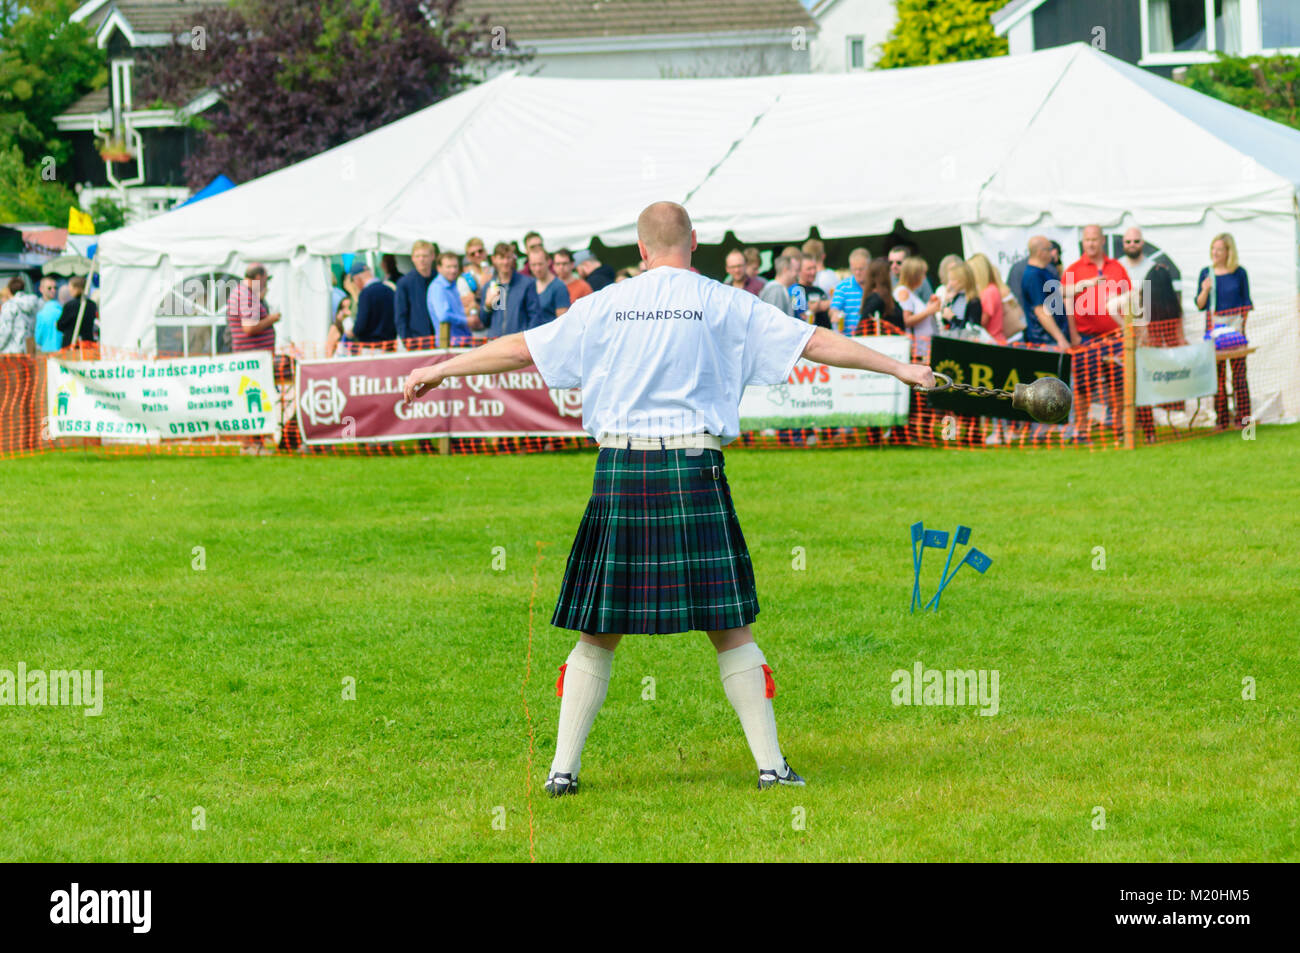 Männliche bereitet im Gewicht zu konkurrieren werfen Wettbewerb auf Dundonald Highland Games, Ayrshire, die feiert traditionelle schottische Kultur Stockfoto